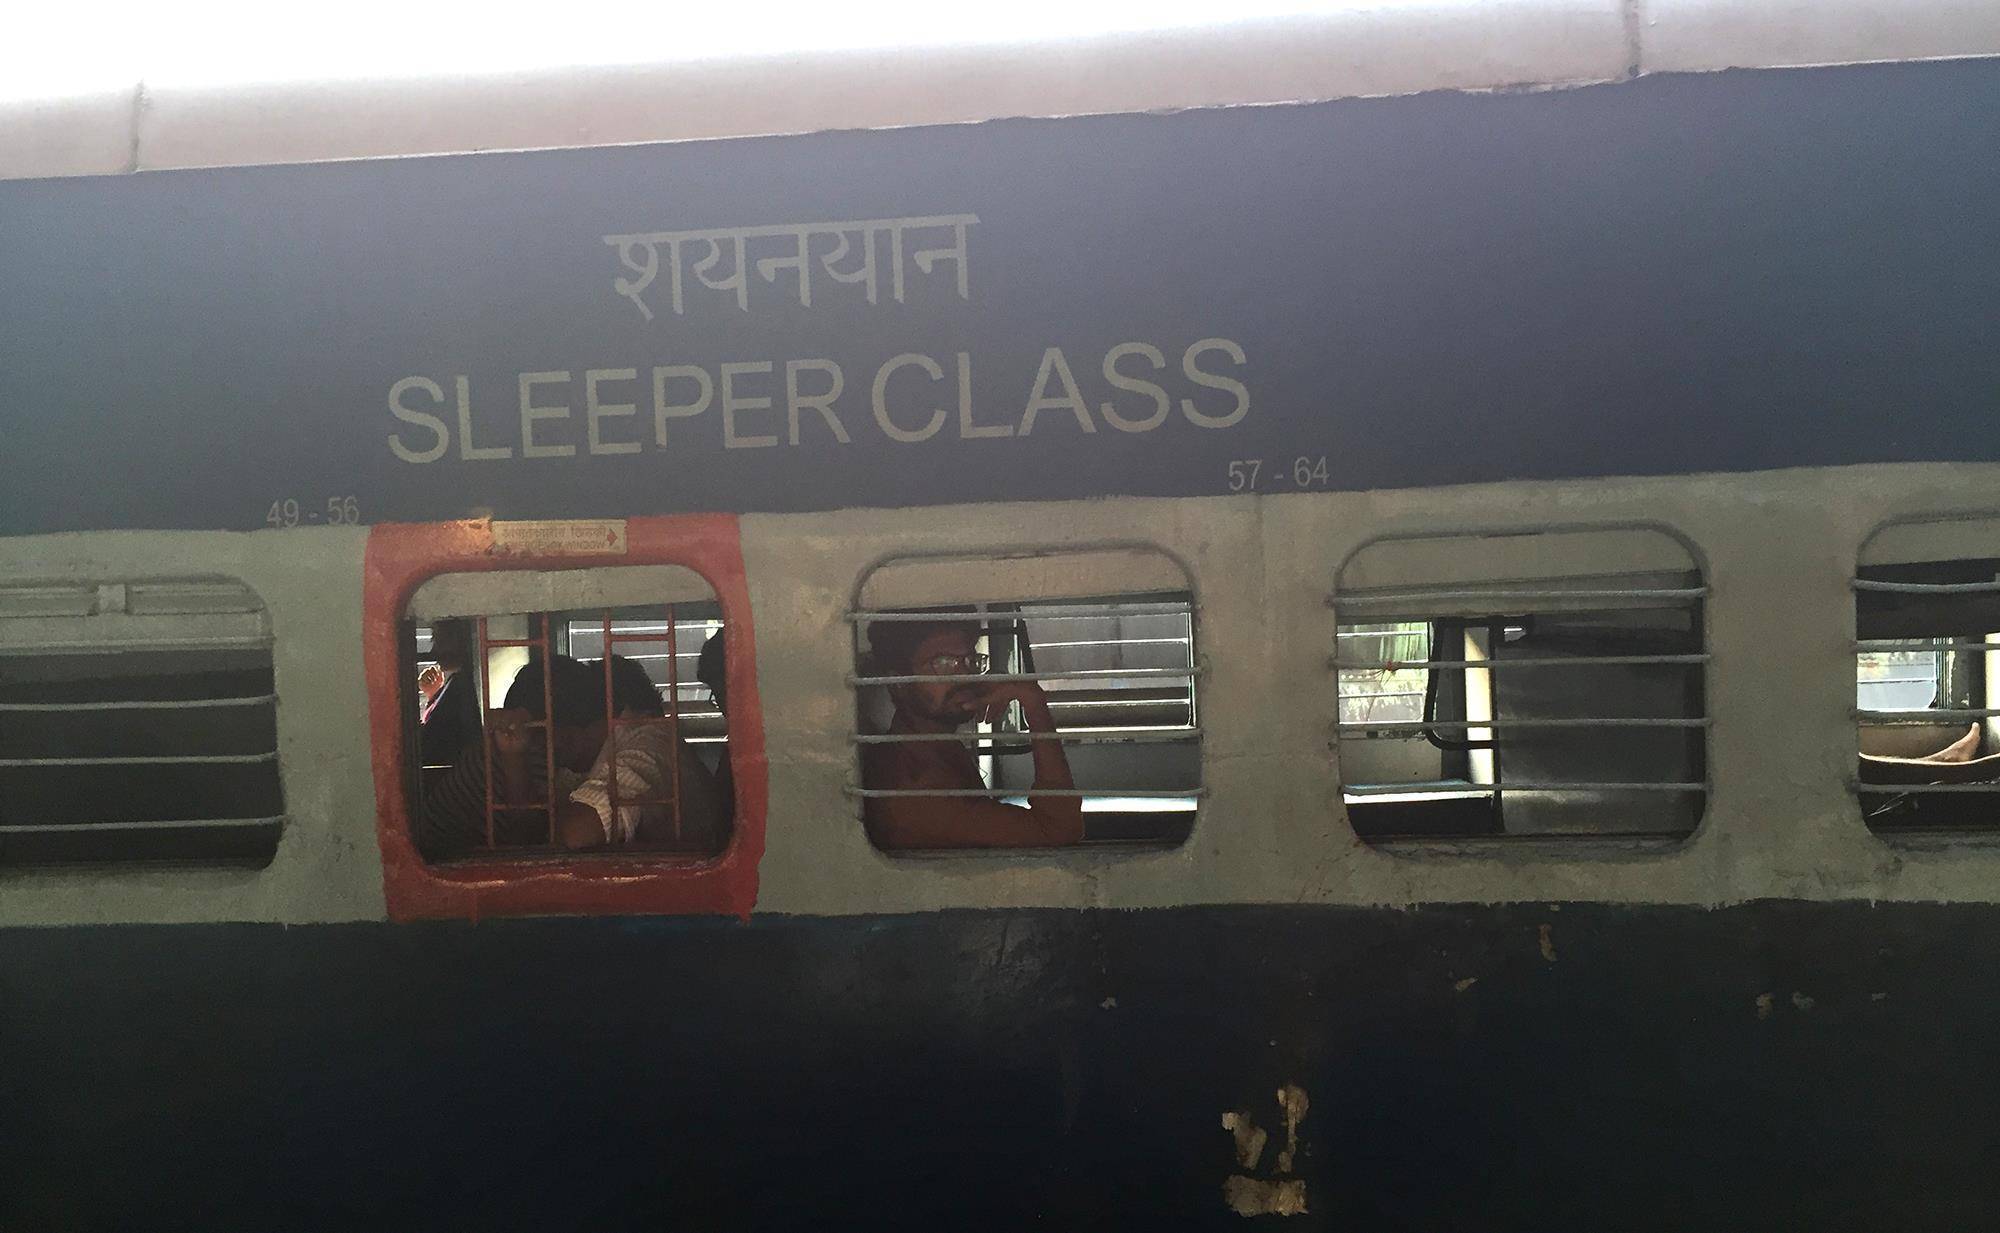 实拍印度火车卧铺，有插排有镜子干净整洁，跟你想象的或许不一样